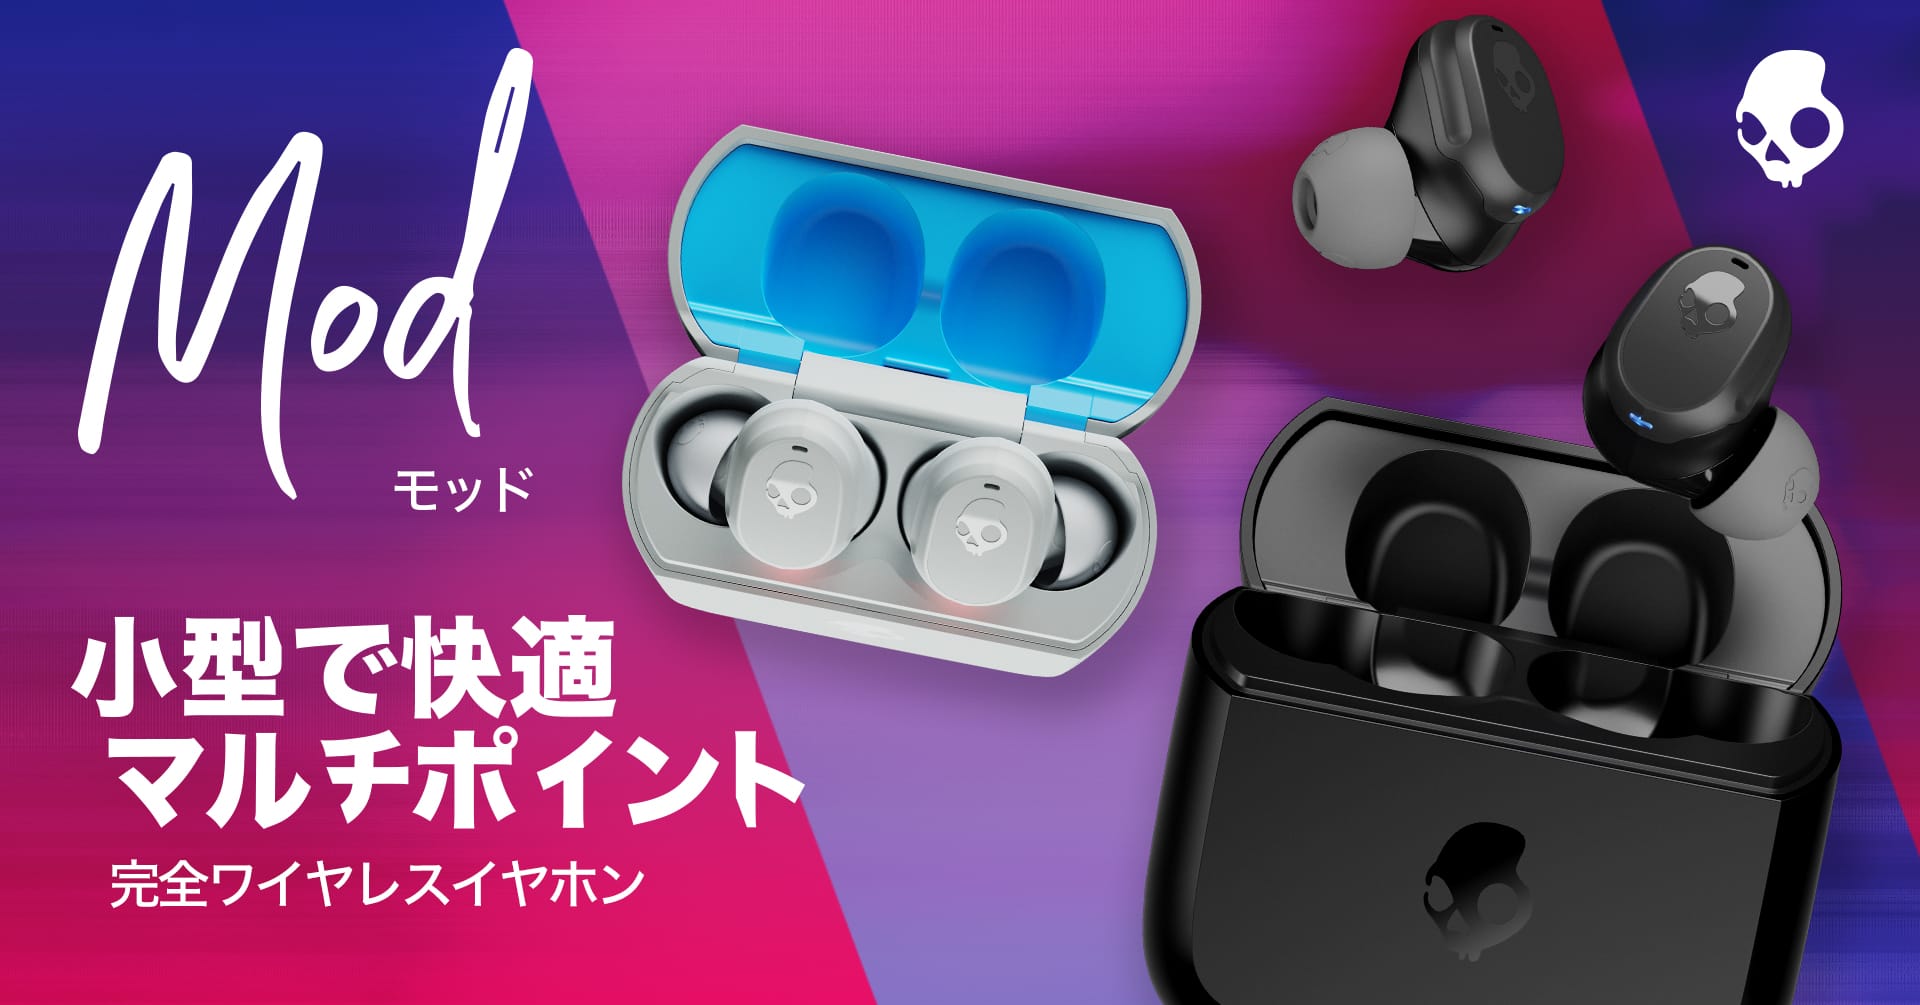 Skullcandy、1万円未満の完全ワイヤレスイヤフォン「Mod」を発売